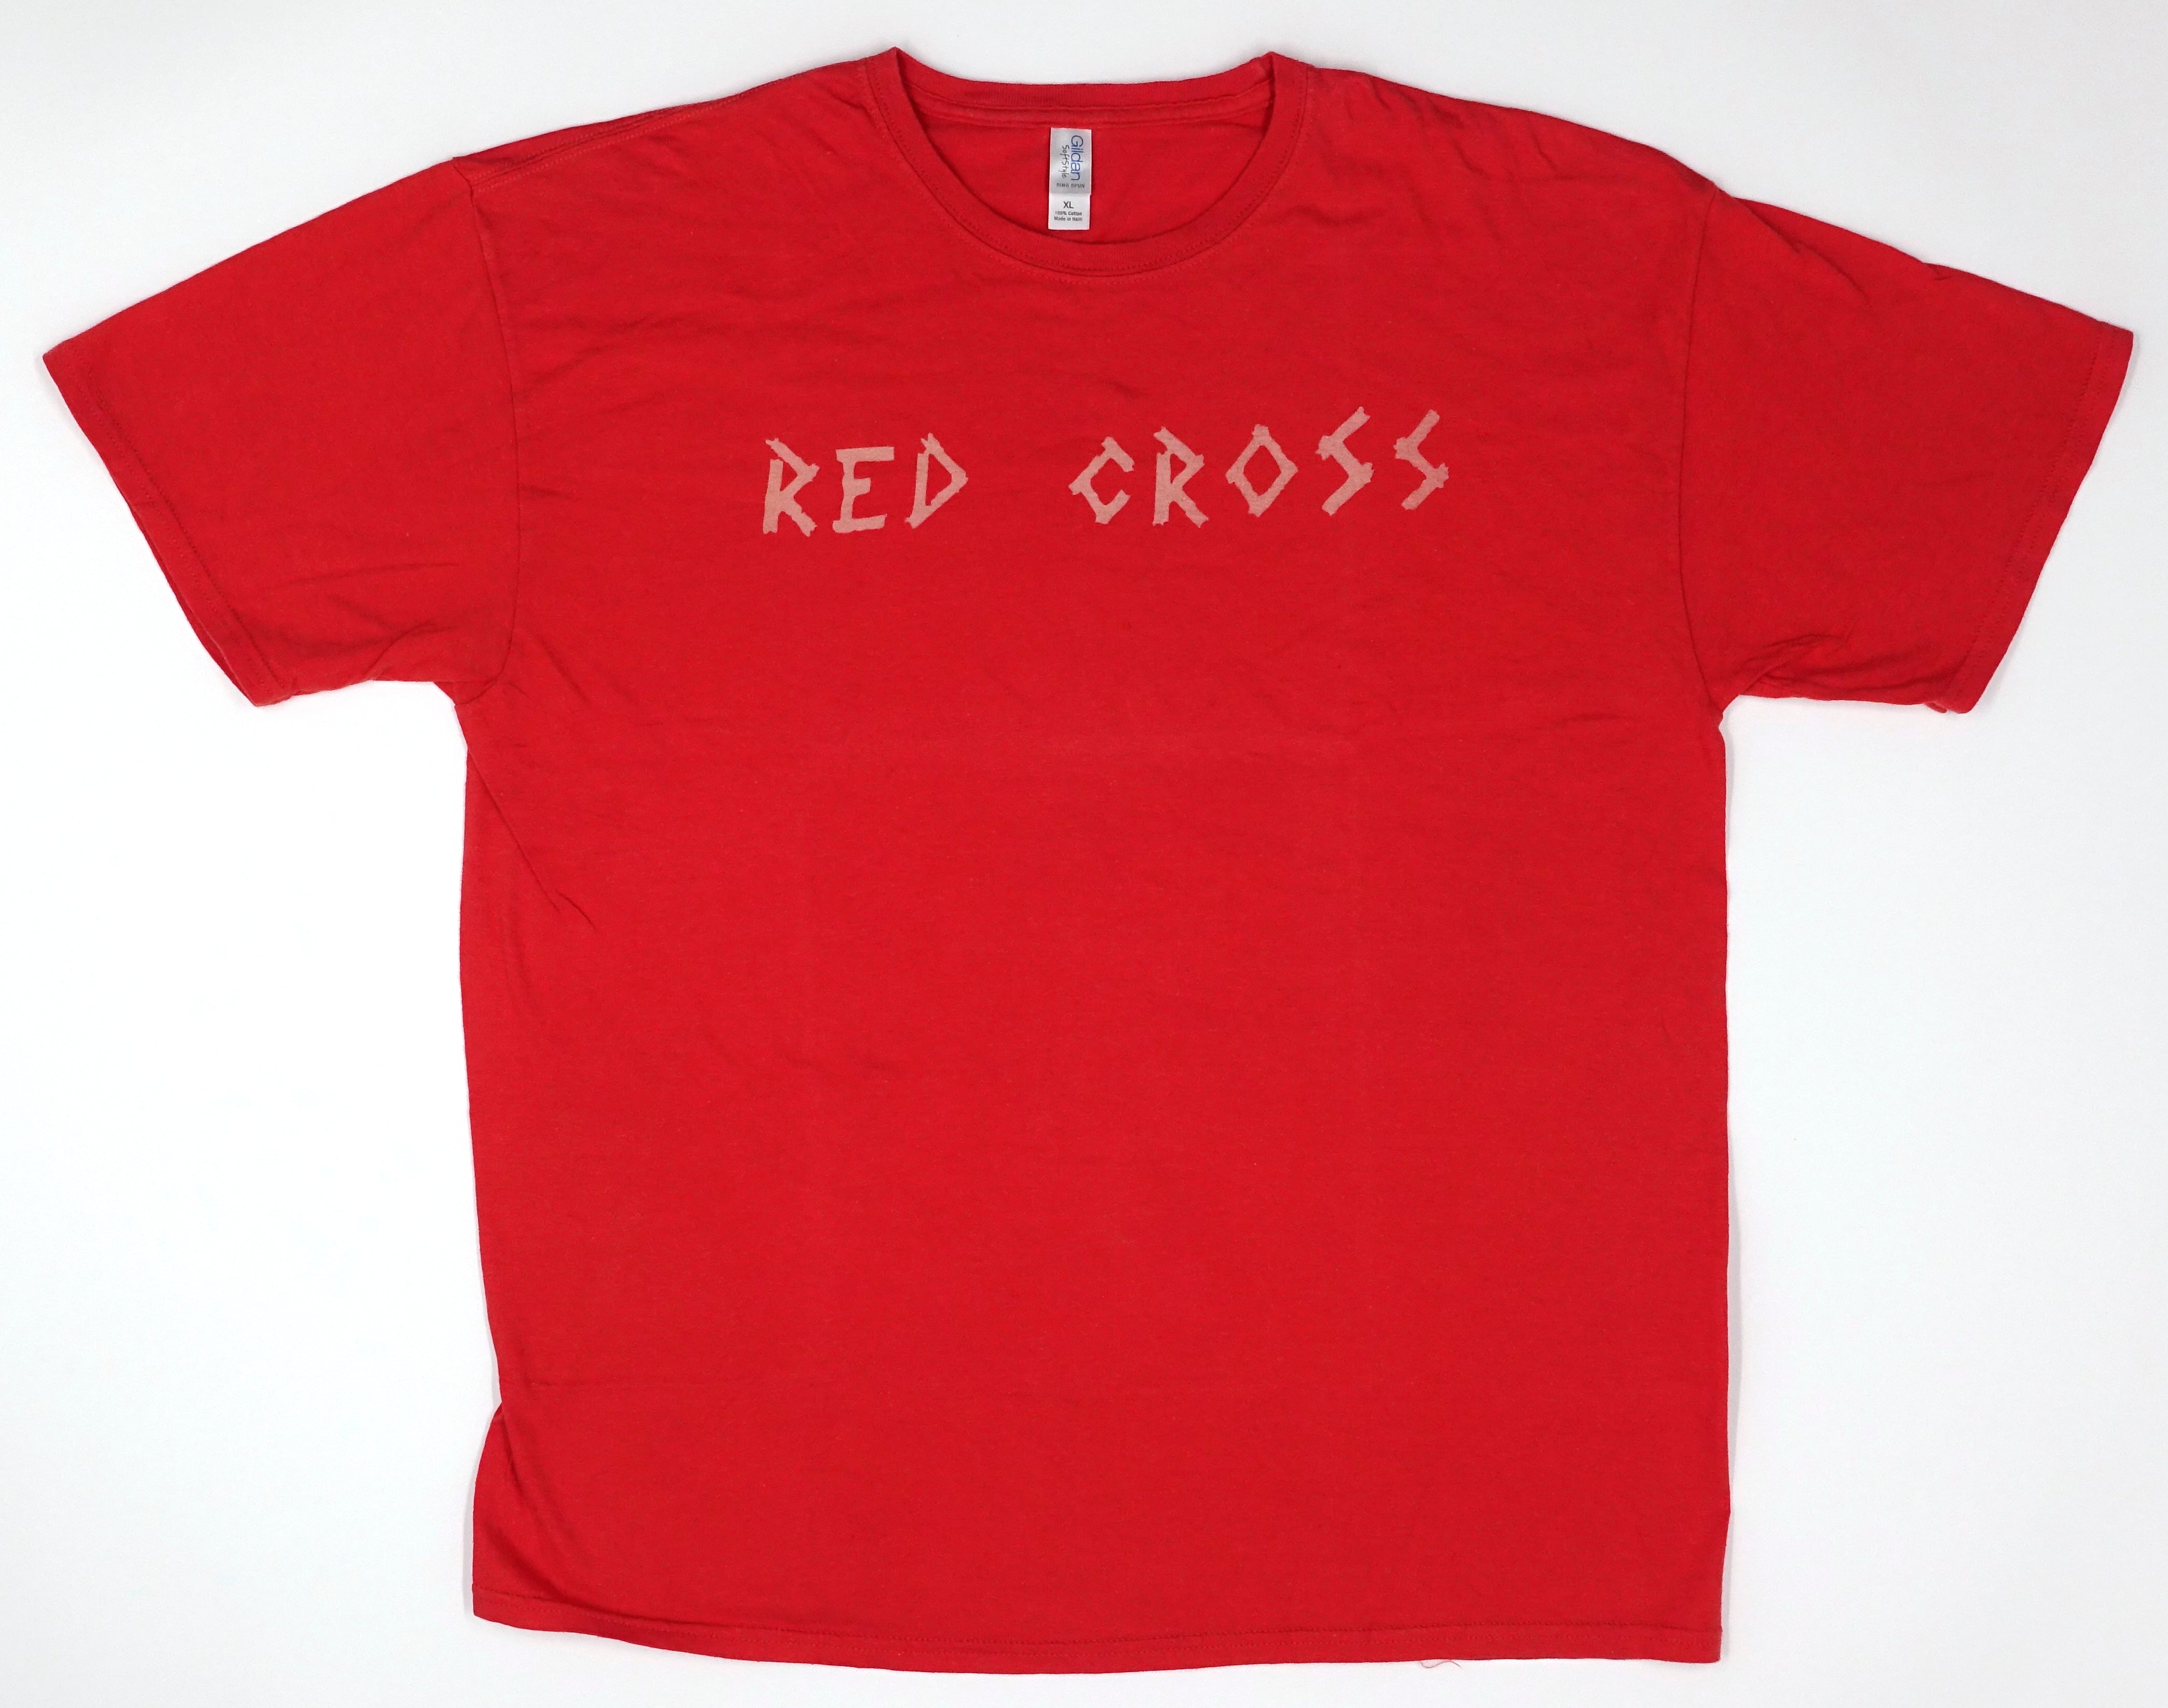 Redd Kross - Red Cross 00's Tour Shirt Size XL